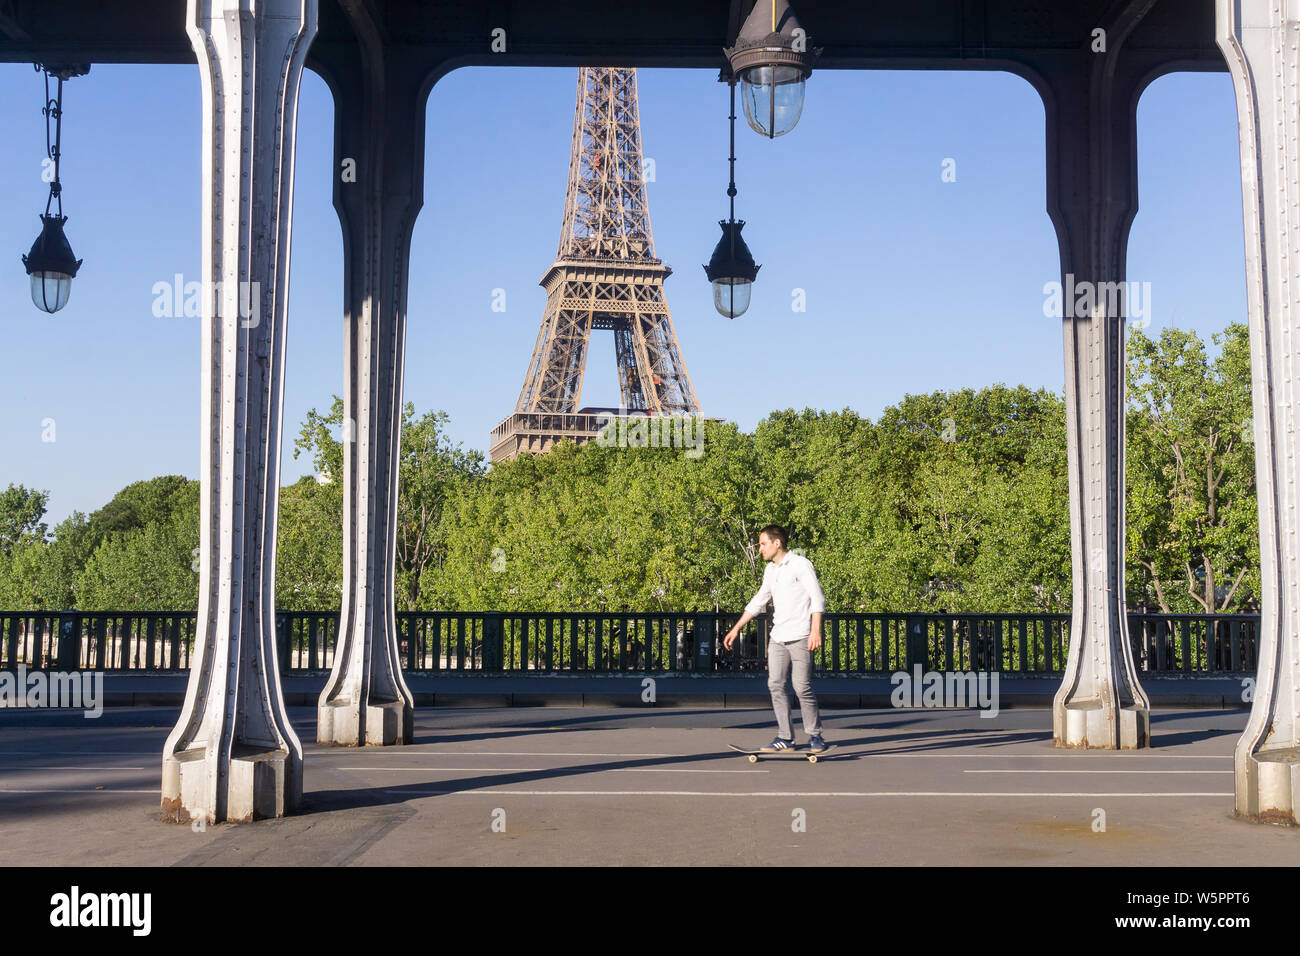 Paris - un homme skateboard skateboard sur la circonscription au pont Bir Hakeim à Paris, France, Europe. Banque D'Images